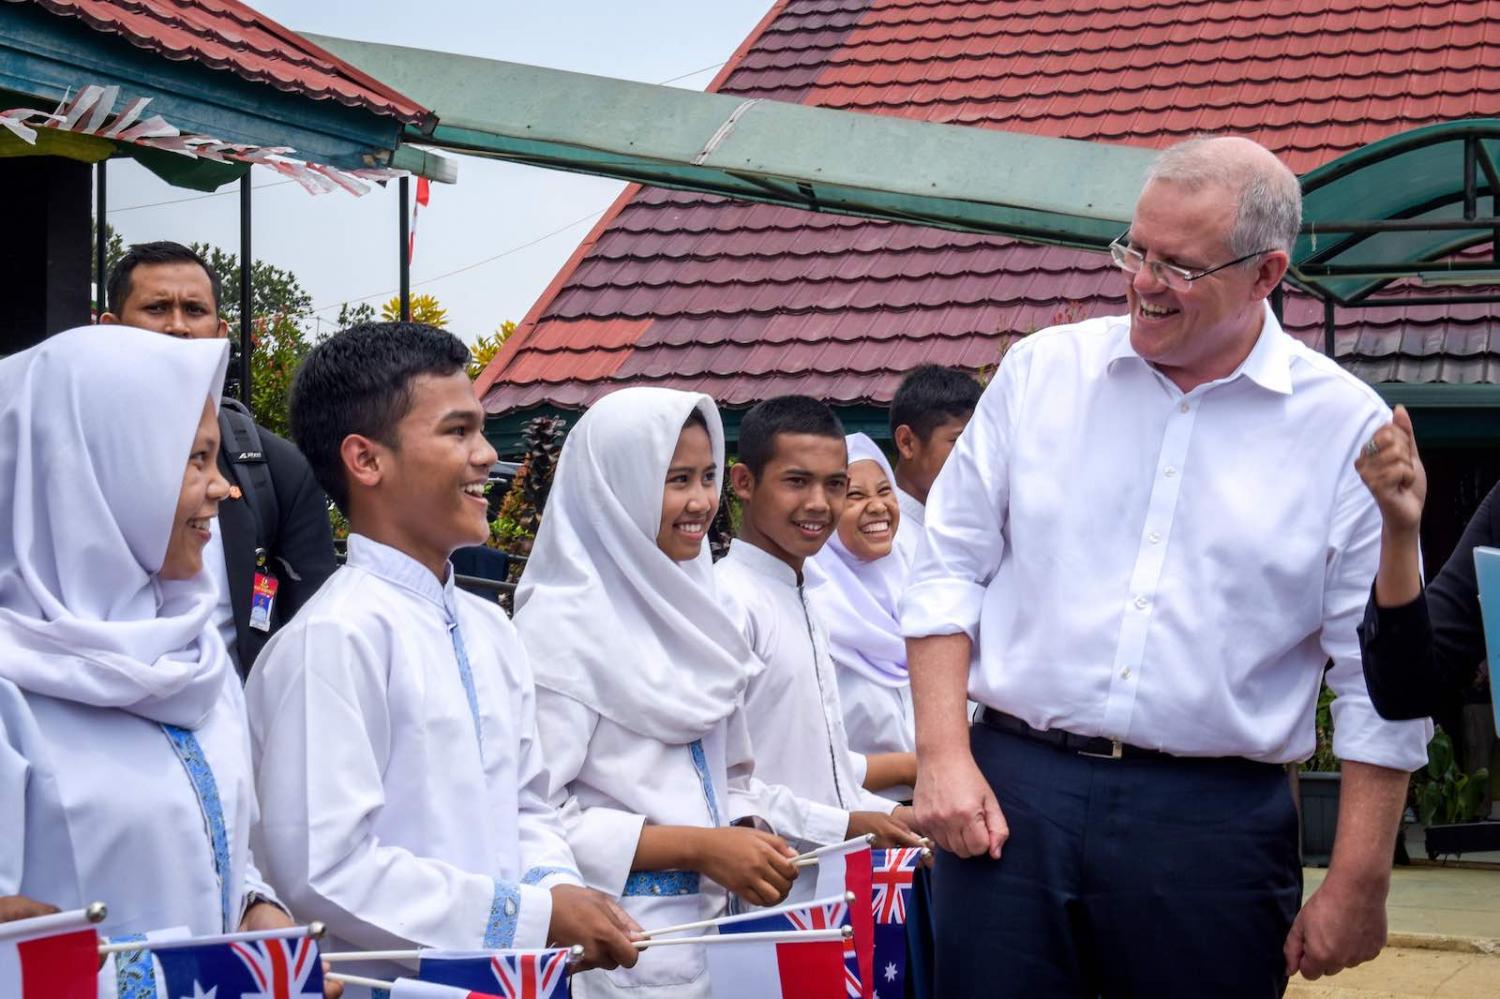 Prime Minister Scott Morrison in Indonesia in August 2018 (Photo: Australian Embassy Jakarta/Flickr)